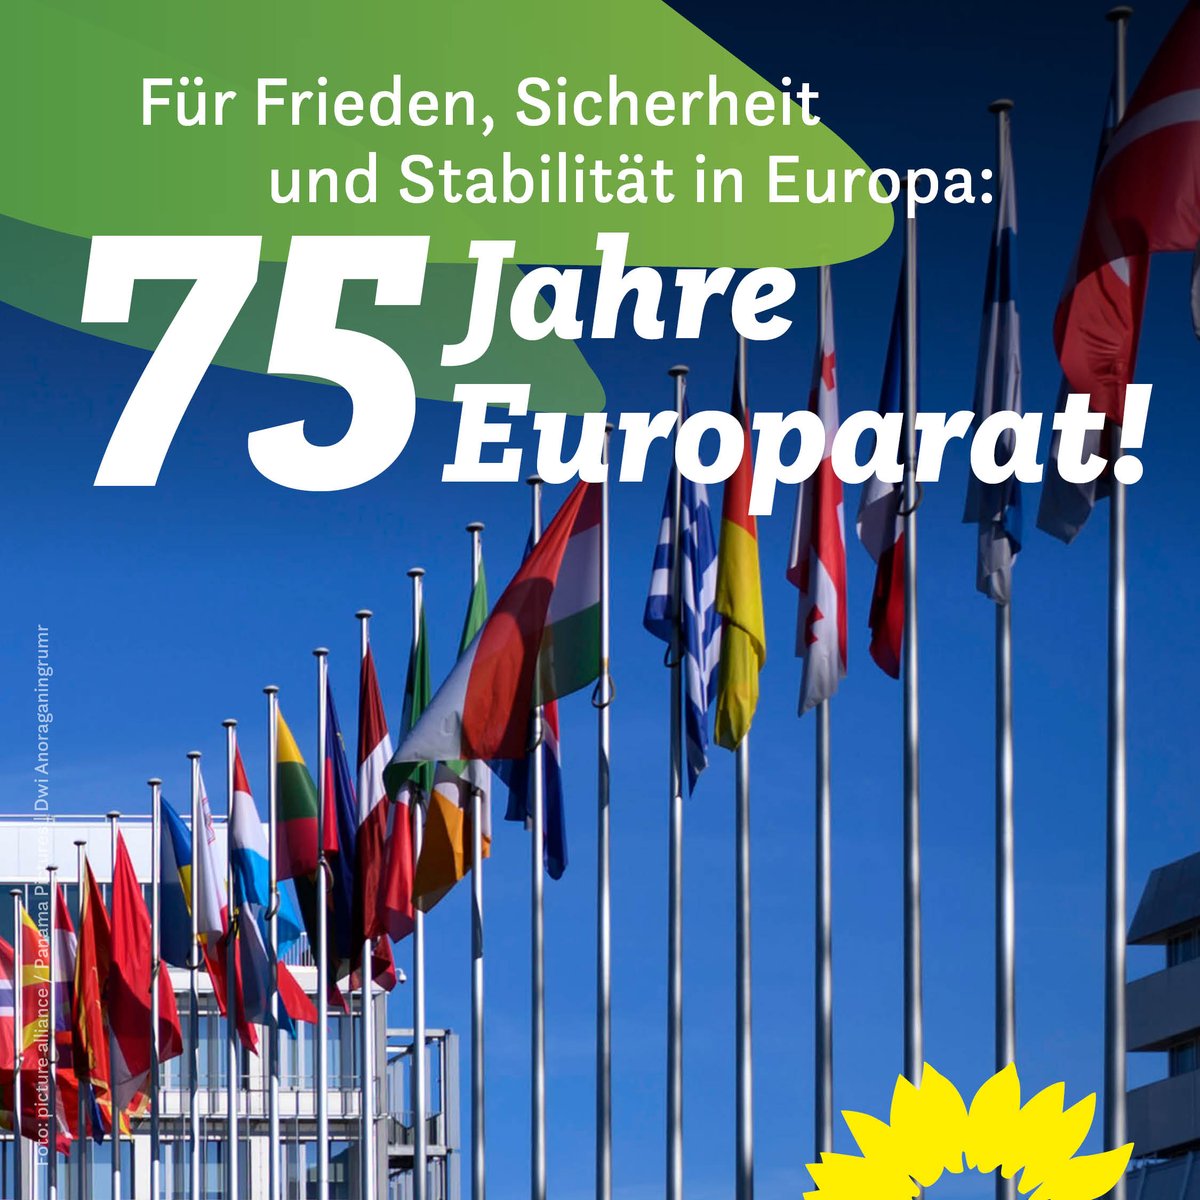 Vor 75 Jahren, am 5.5.1949, wurde der Europarat als 1. europäische Organisation nach dem 2. Weltkrieg gegründet! Er steht für Demokratie, Menschenrechte & Rechtsstaatlichkeit. In Zeiten von russischem Angriffskrieg & erstarkendem Rechtspopulismus ist er wichtiger denn je.